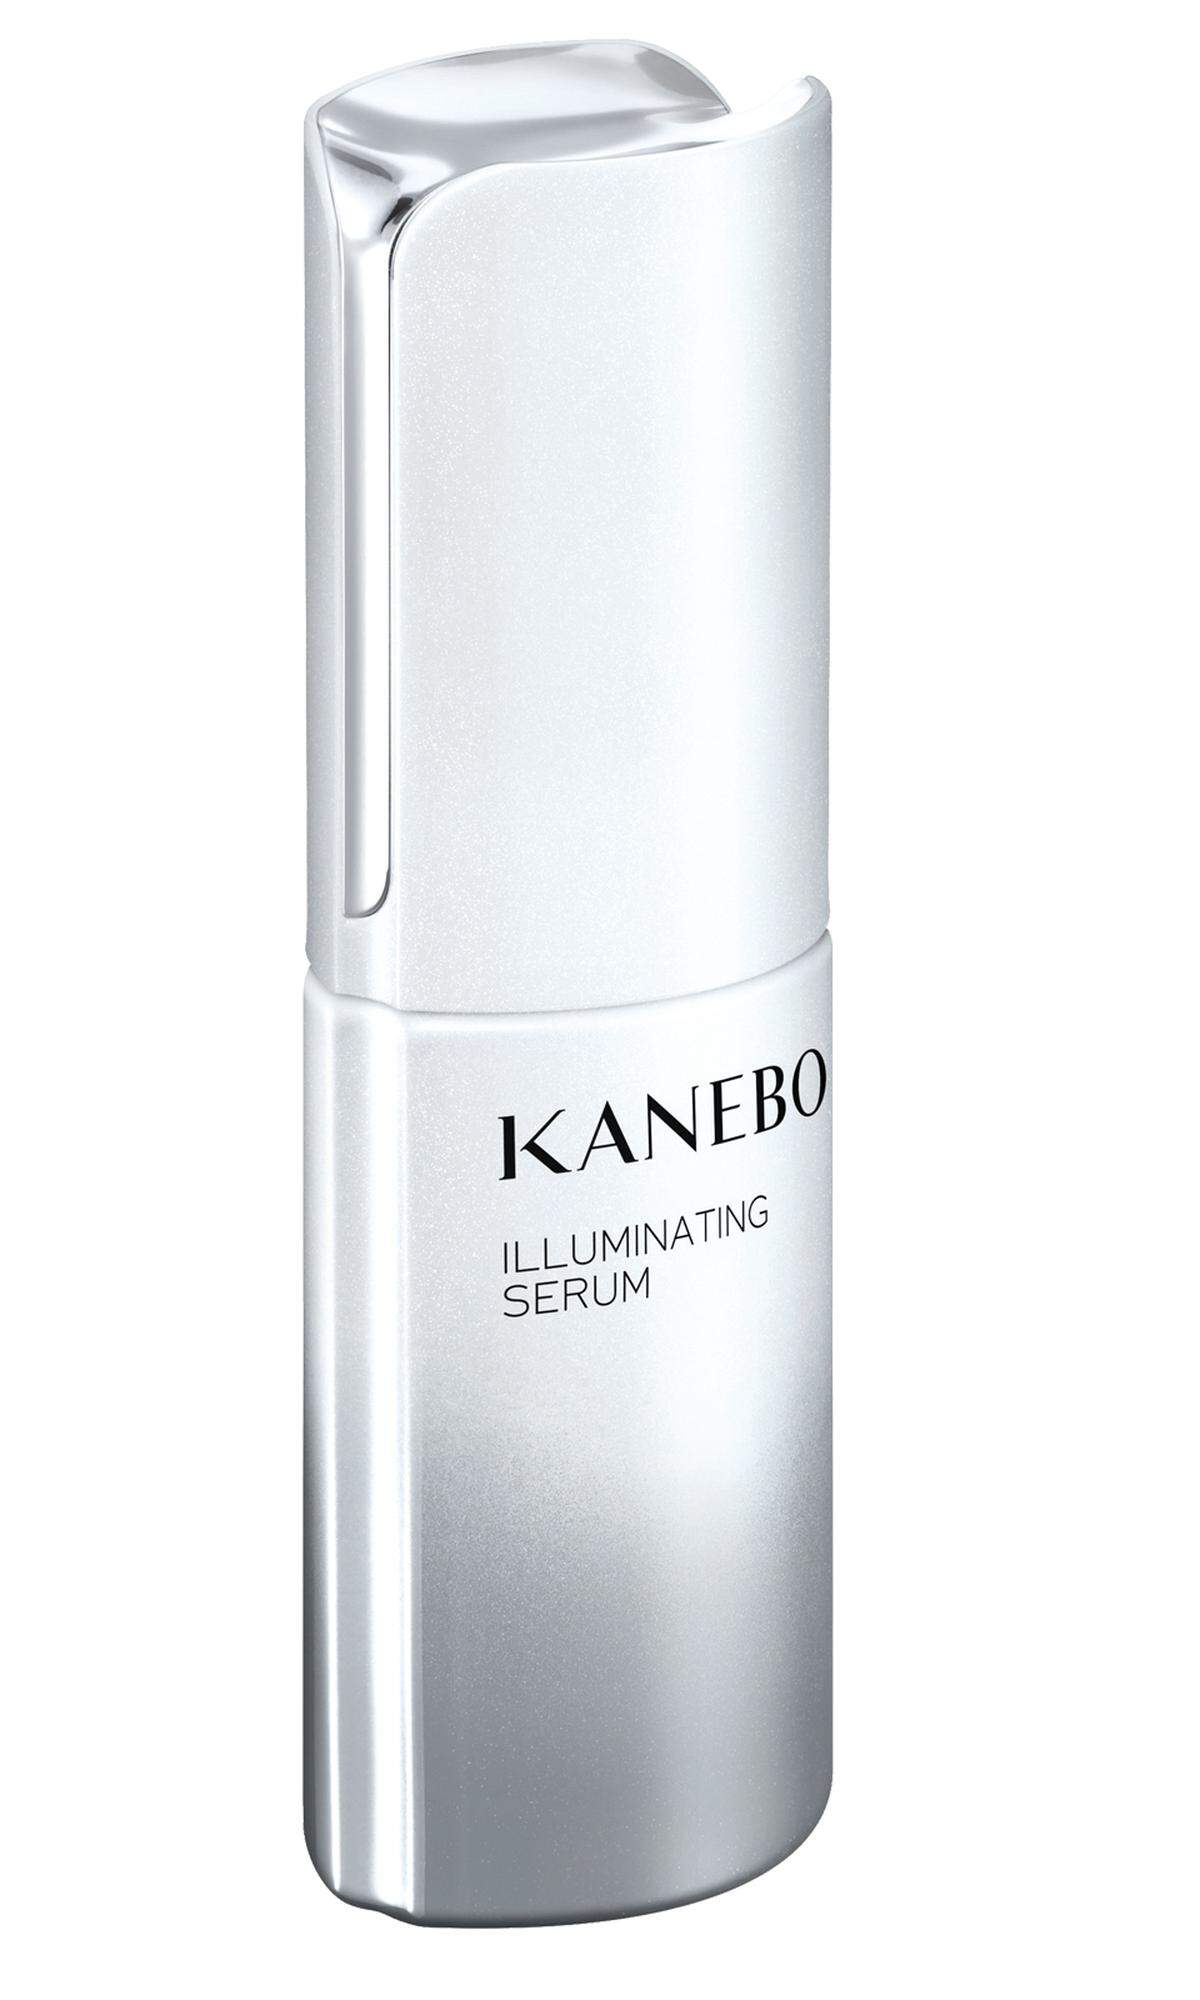 Hautpflege „Illuminating Serum" von Kanebo, verfeinert das Hautbild mit der Dreifachwirkung des Balance Clear Complex, 50 ml um 137 Euro, im Fachhandel erhältlich.